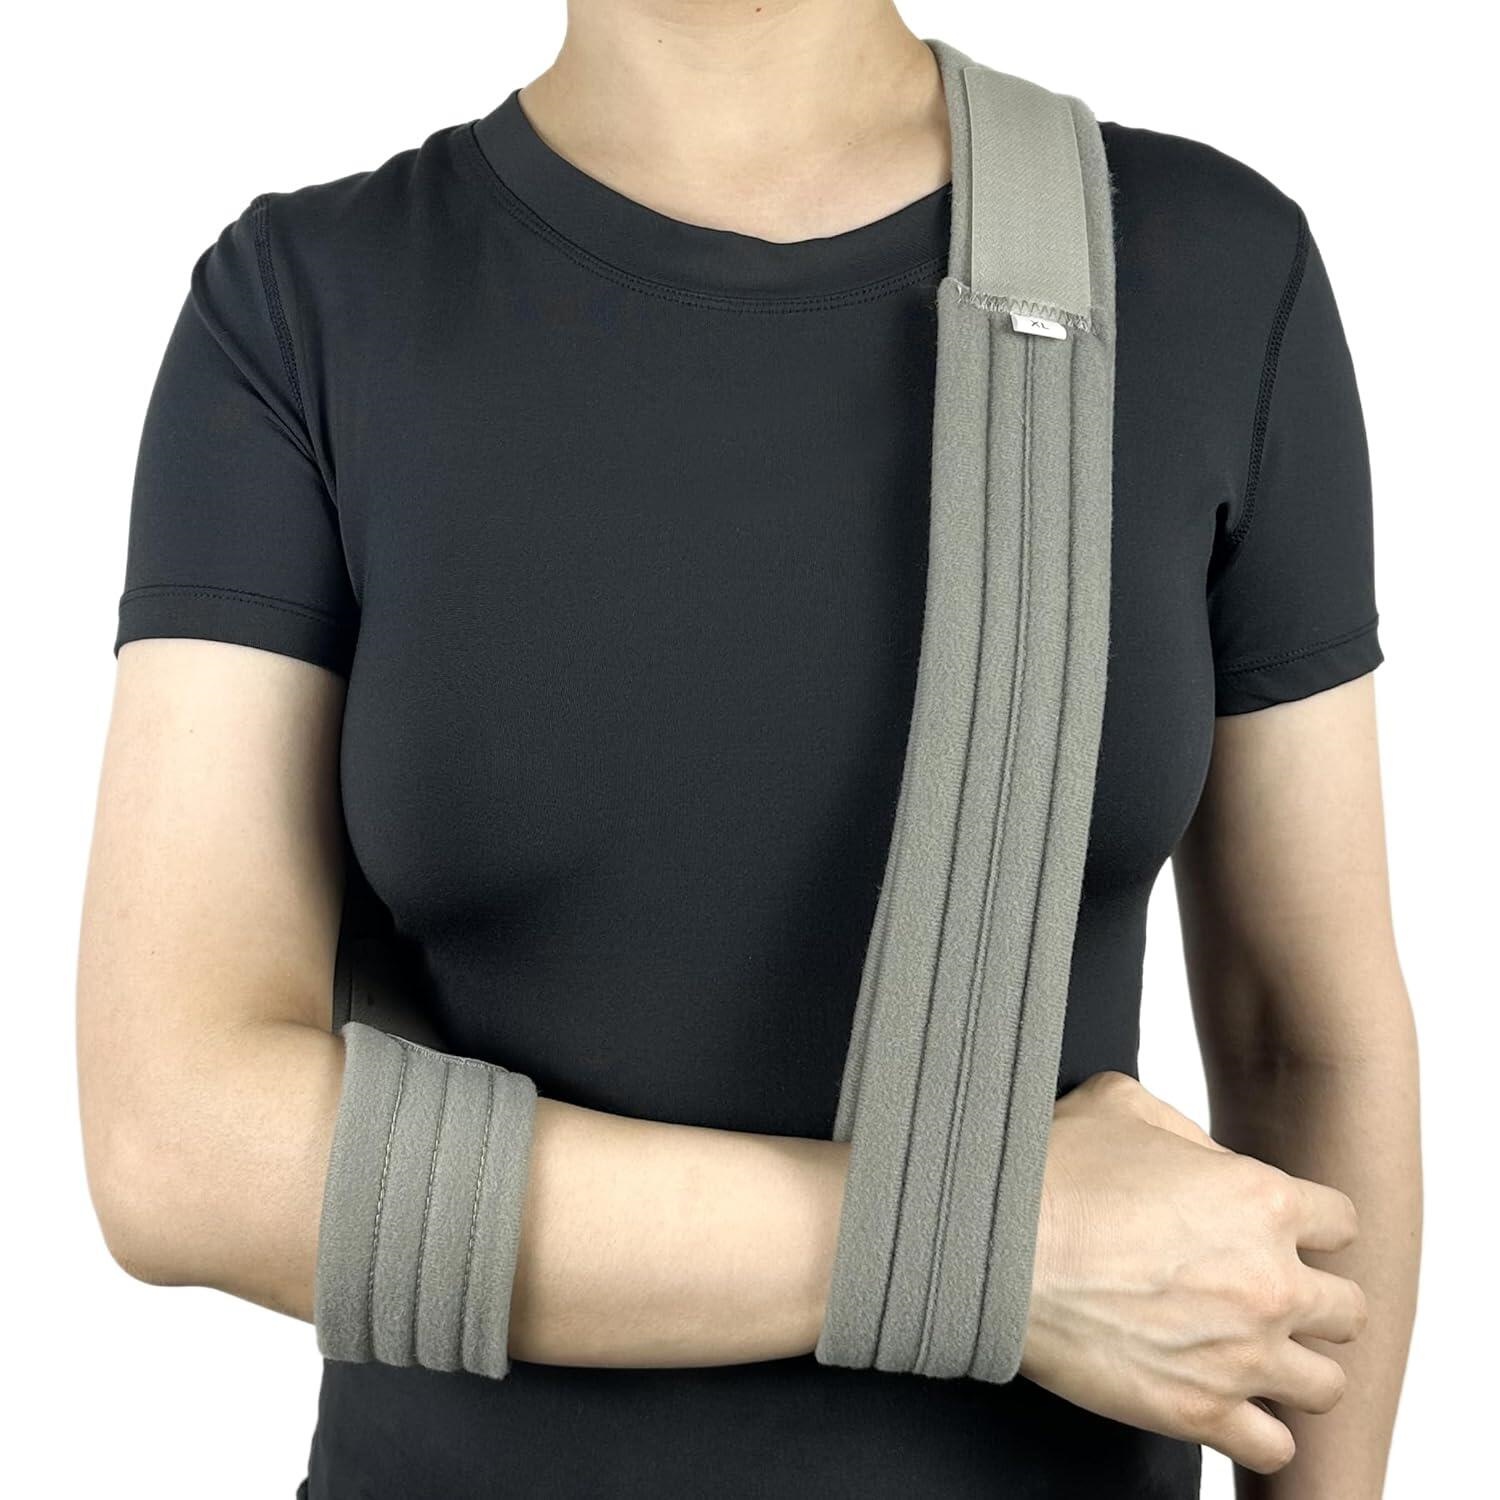 Arm Sling Adjustable Arm Support Strap Lightweight Shoulder Immobilizer for Injured Arm Elbow 